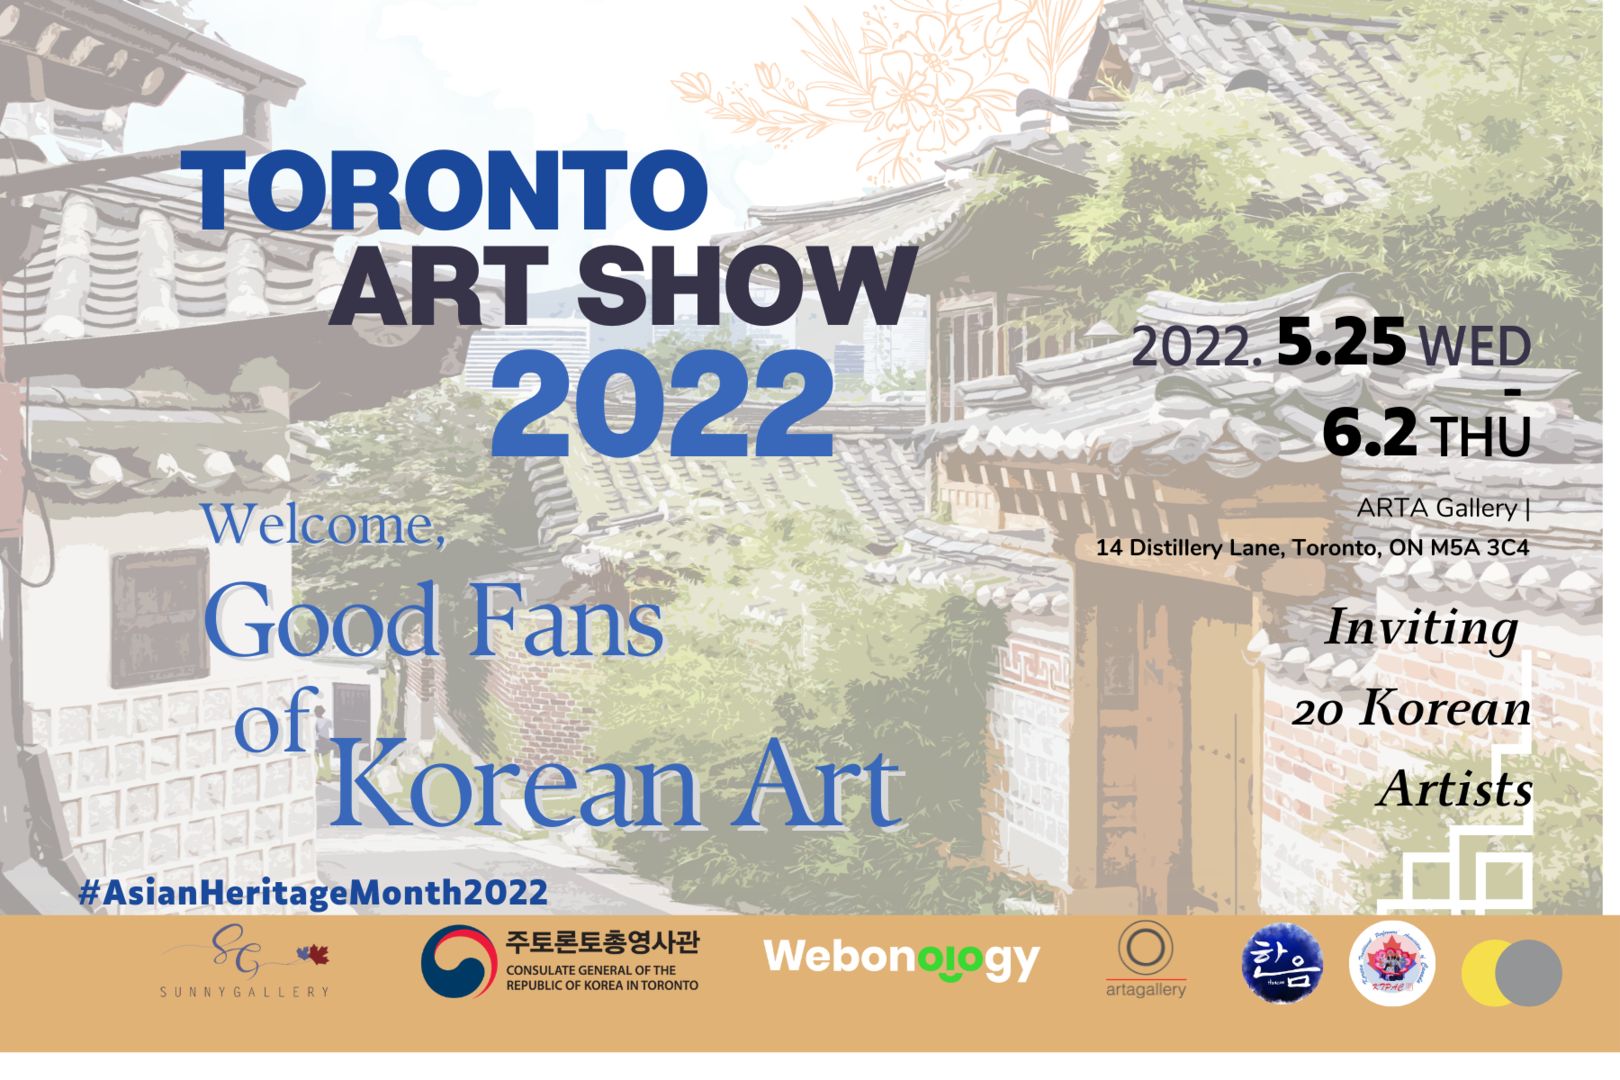 Toronto Art Show 2022: Good Fans of Korean Art, Toronto, Ontario, Canada